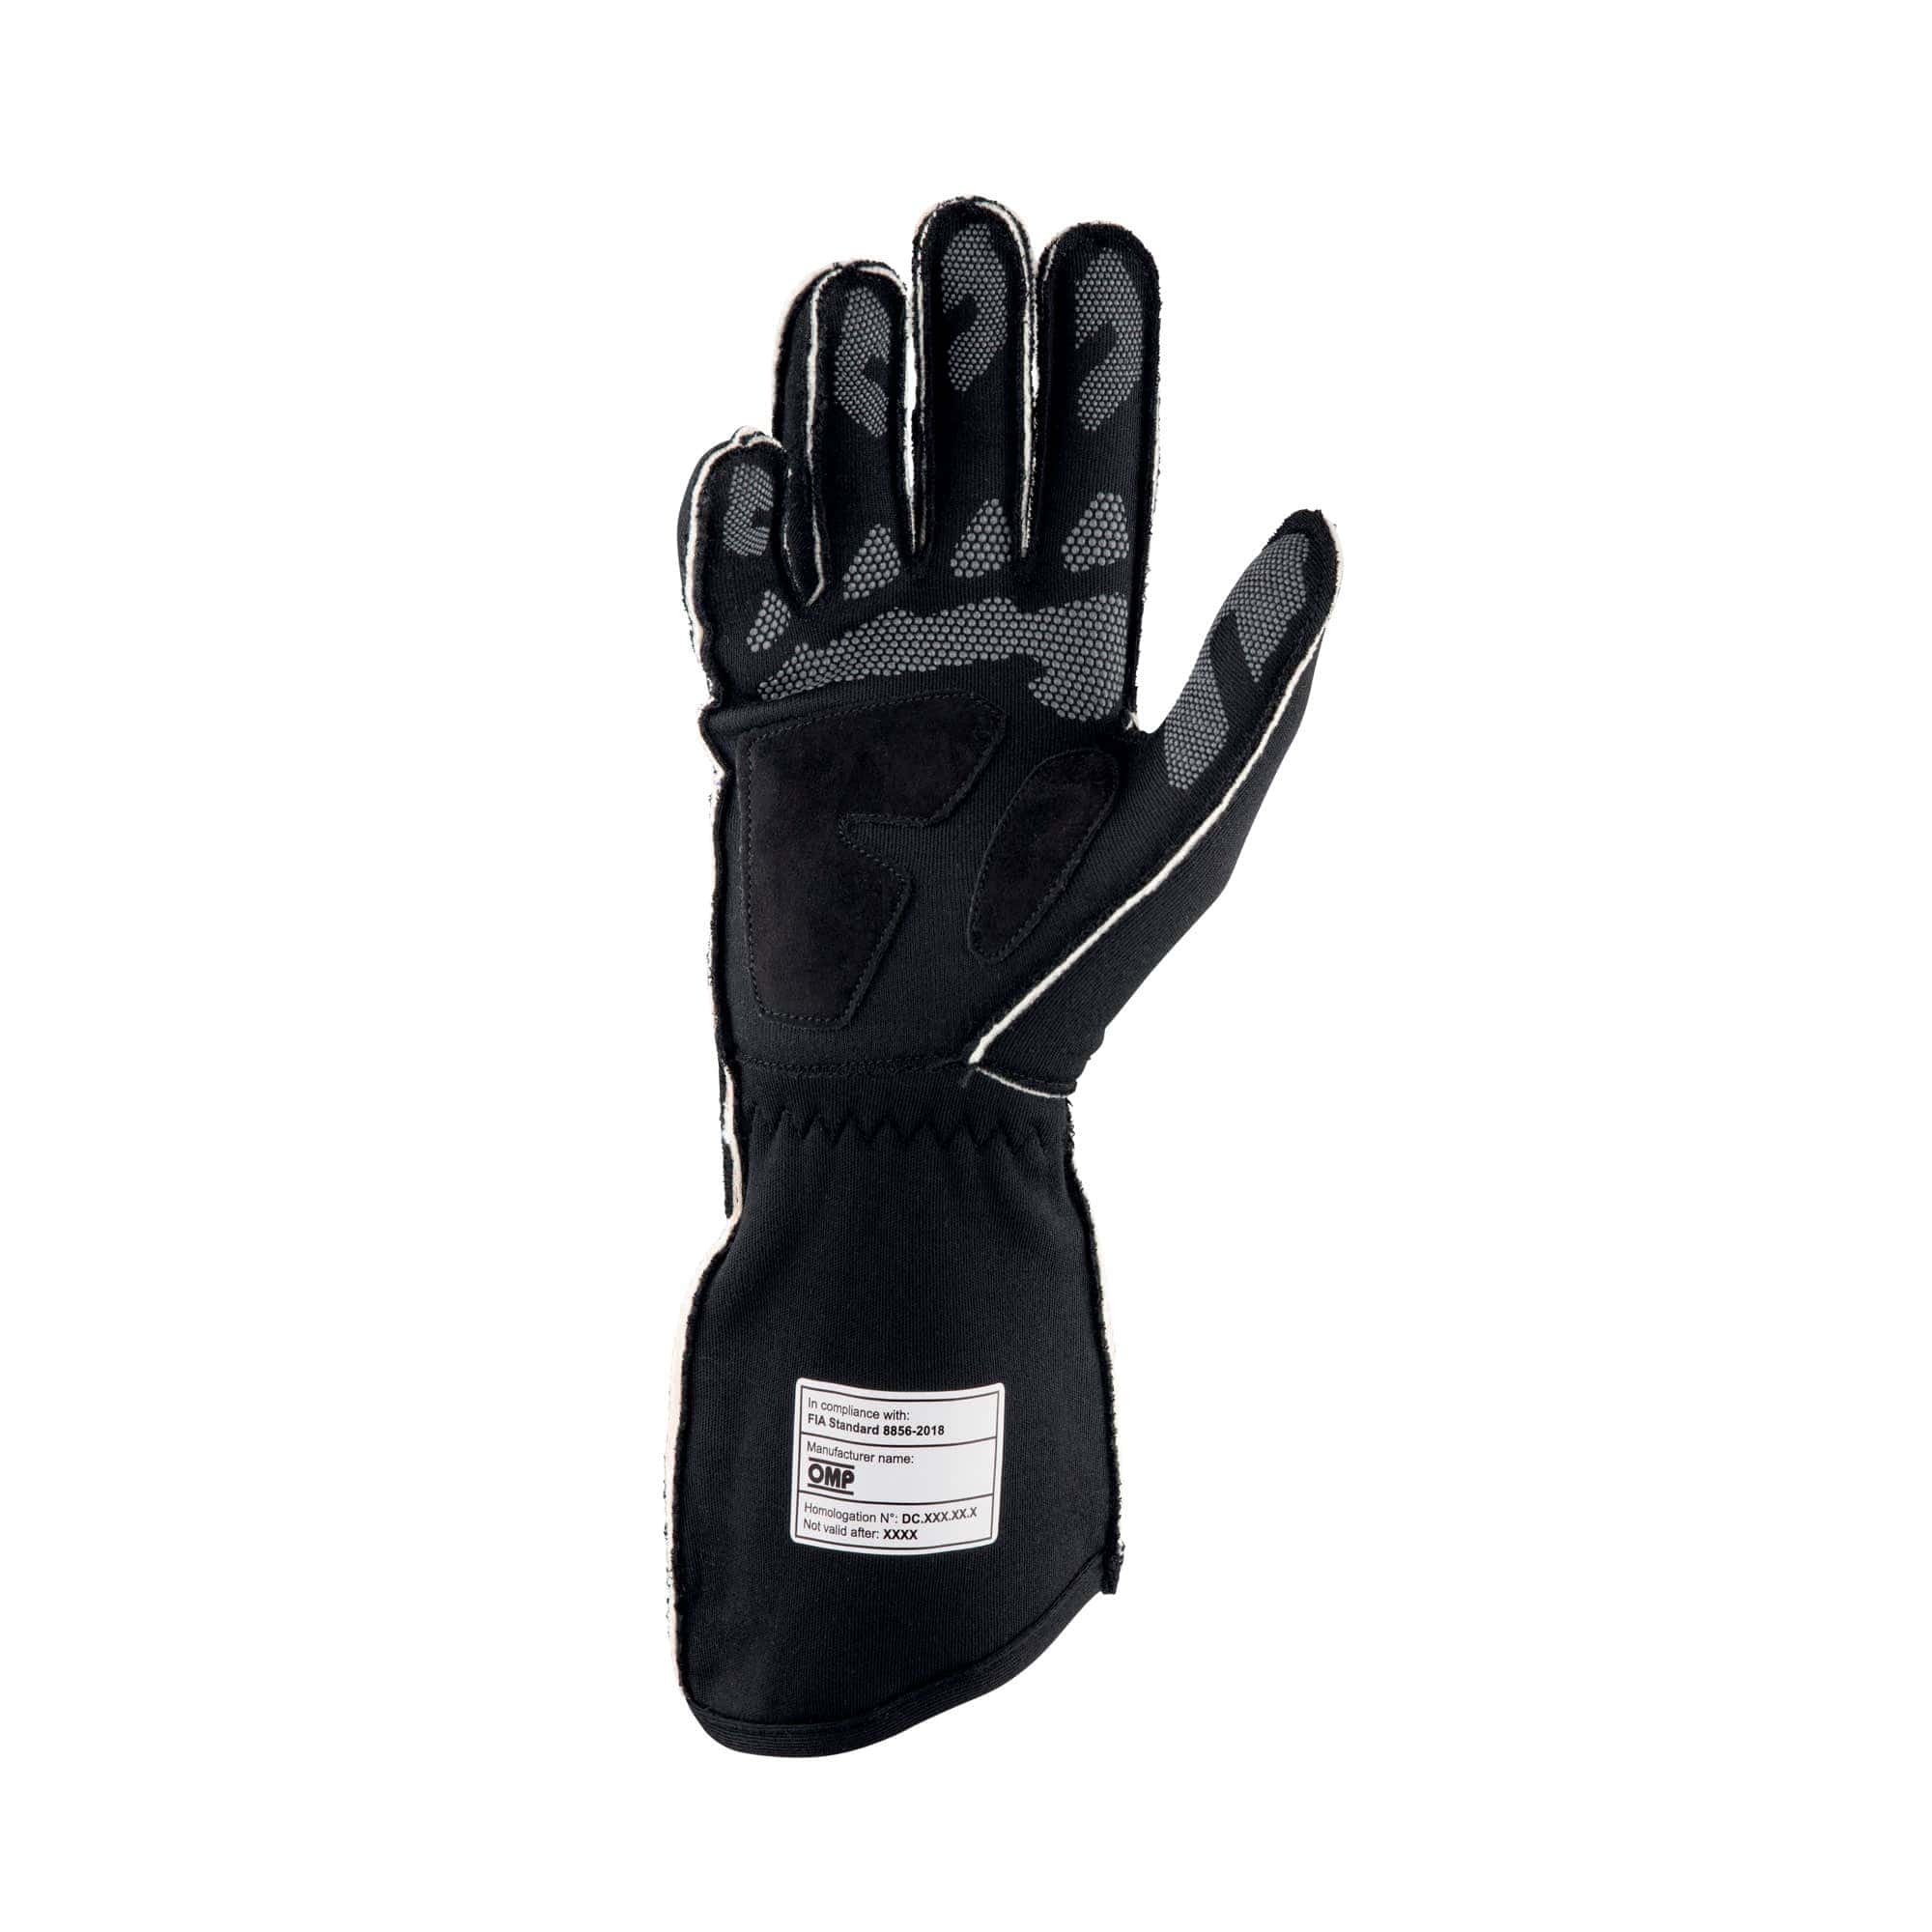 Guanti-Tecnica-Gloves-Omp-Nero-Giallo-Fluo-IB-772-NGI-rear